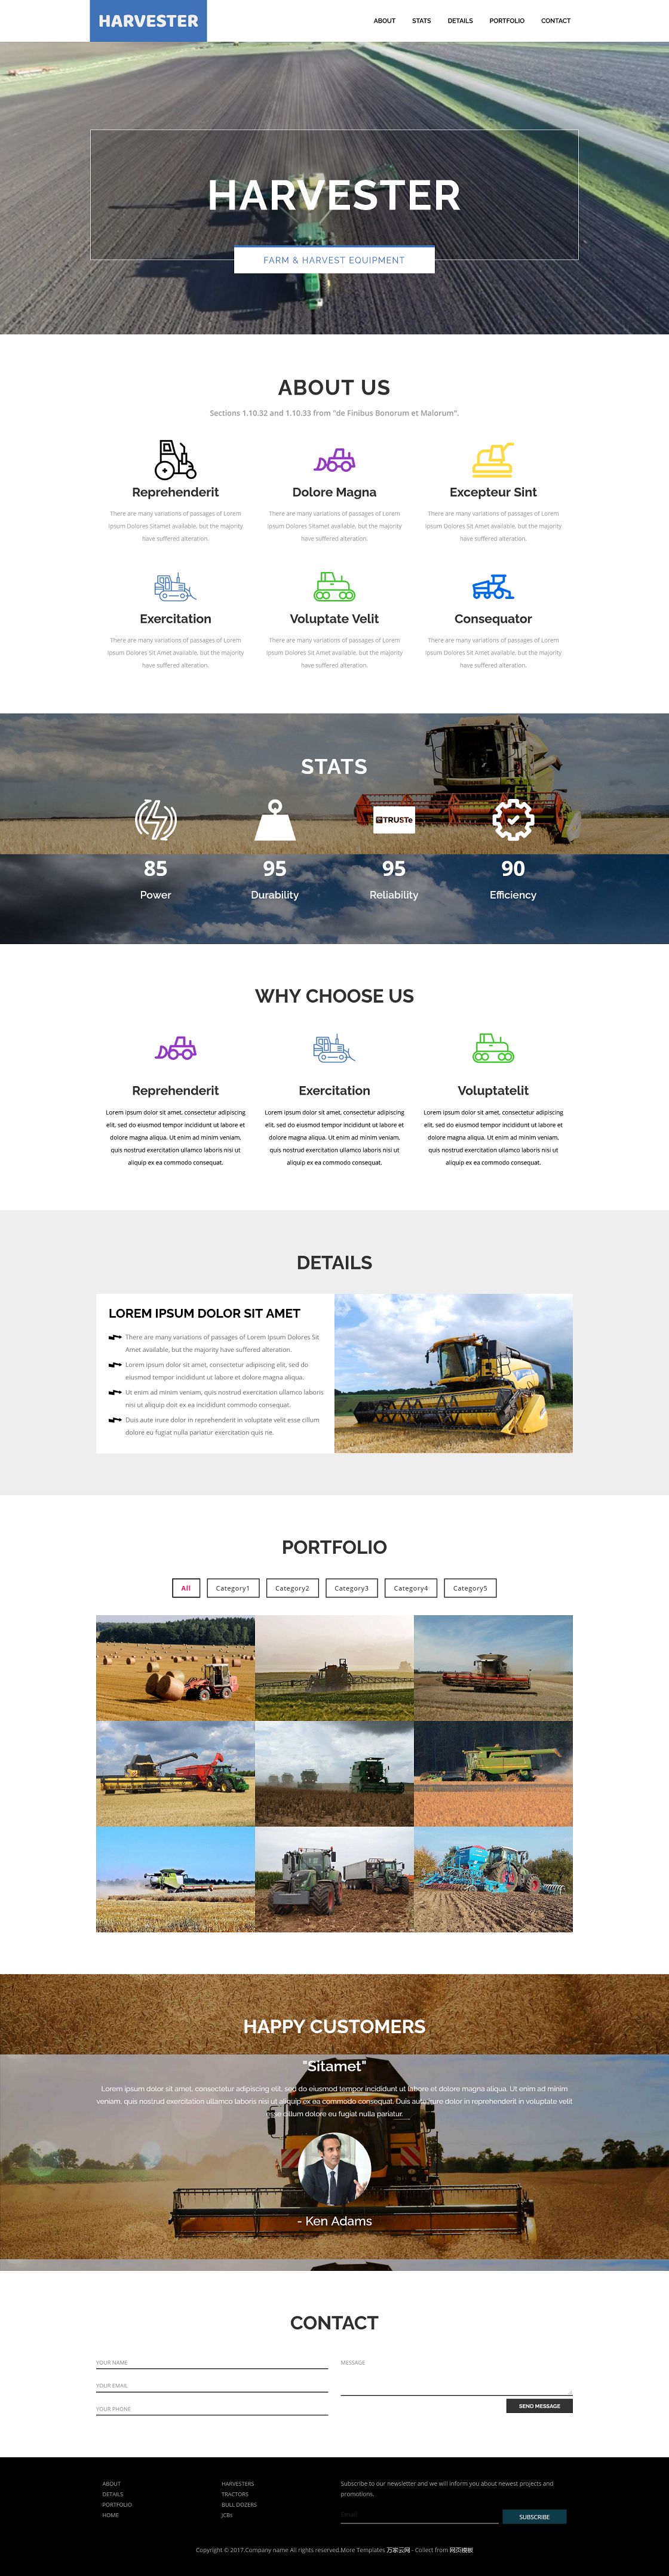 农业机械设备公司企业网站模板